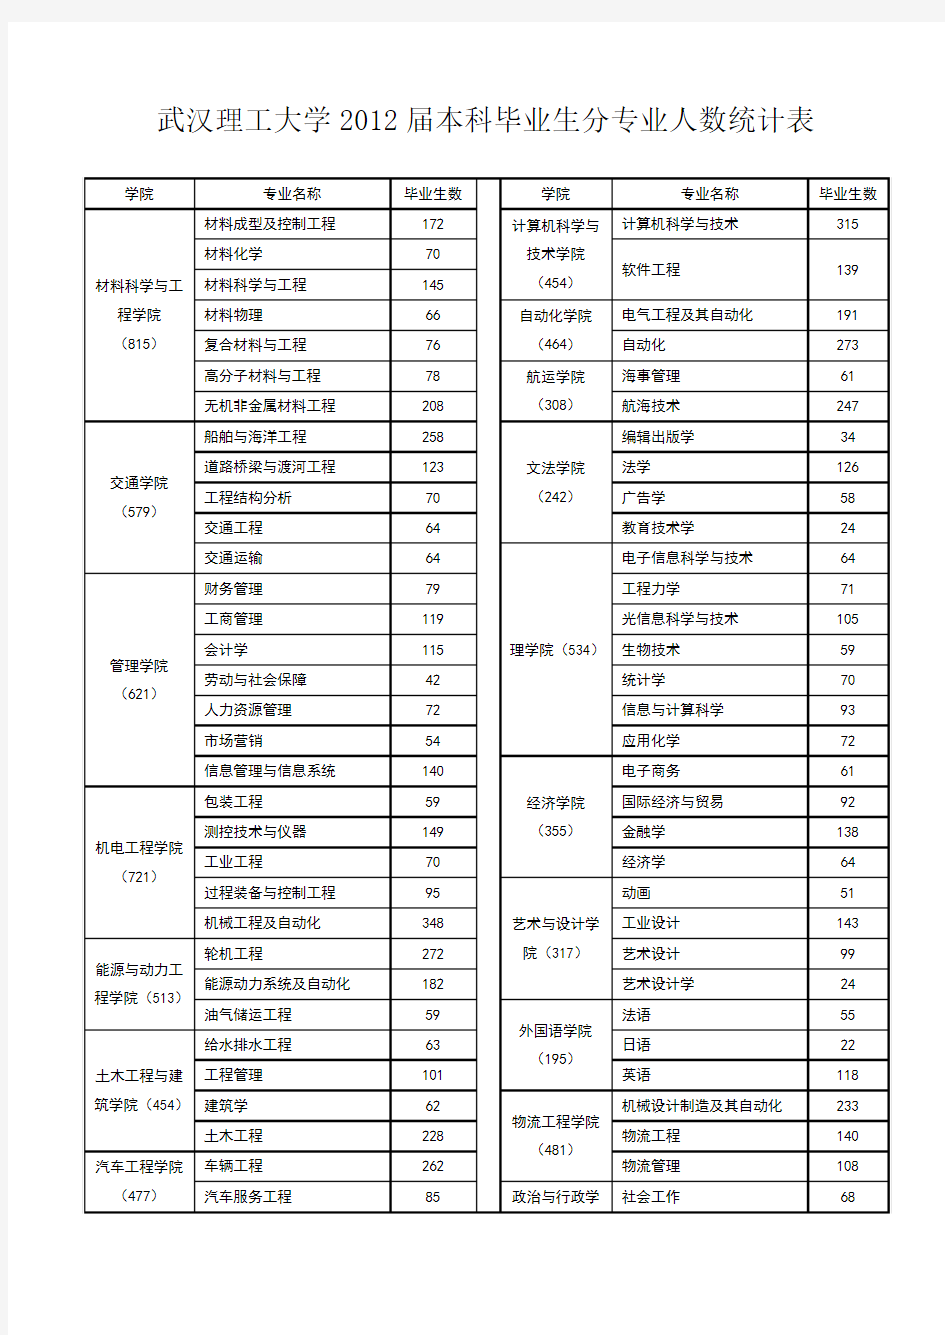 武汉理工大学2012届本科毕业生分专业人数统计表